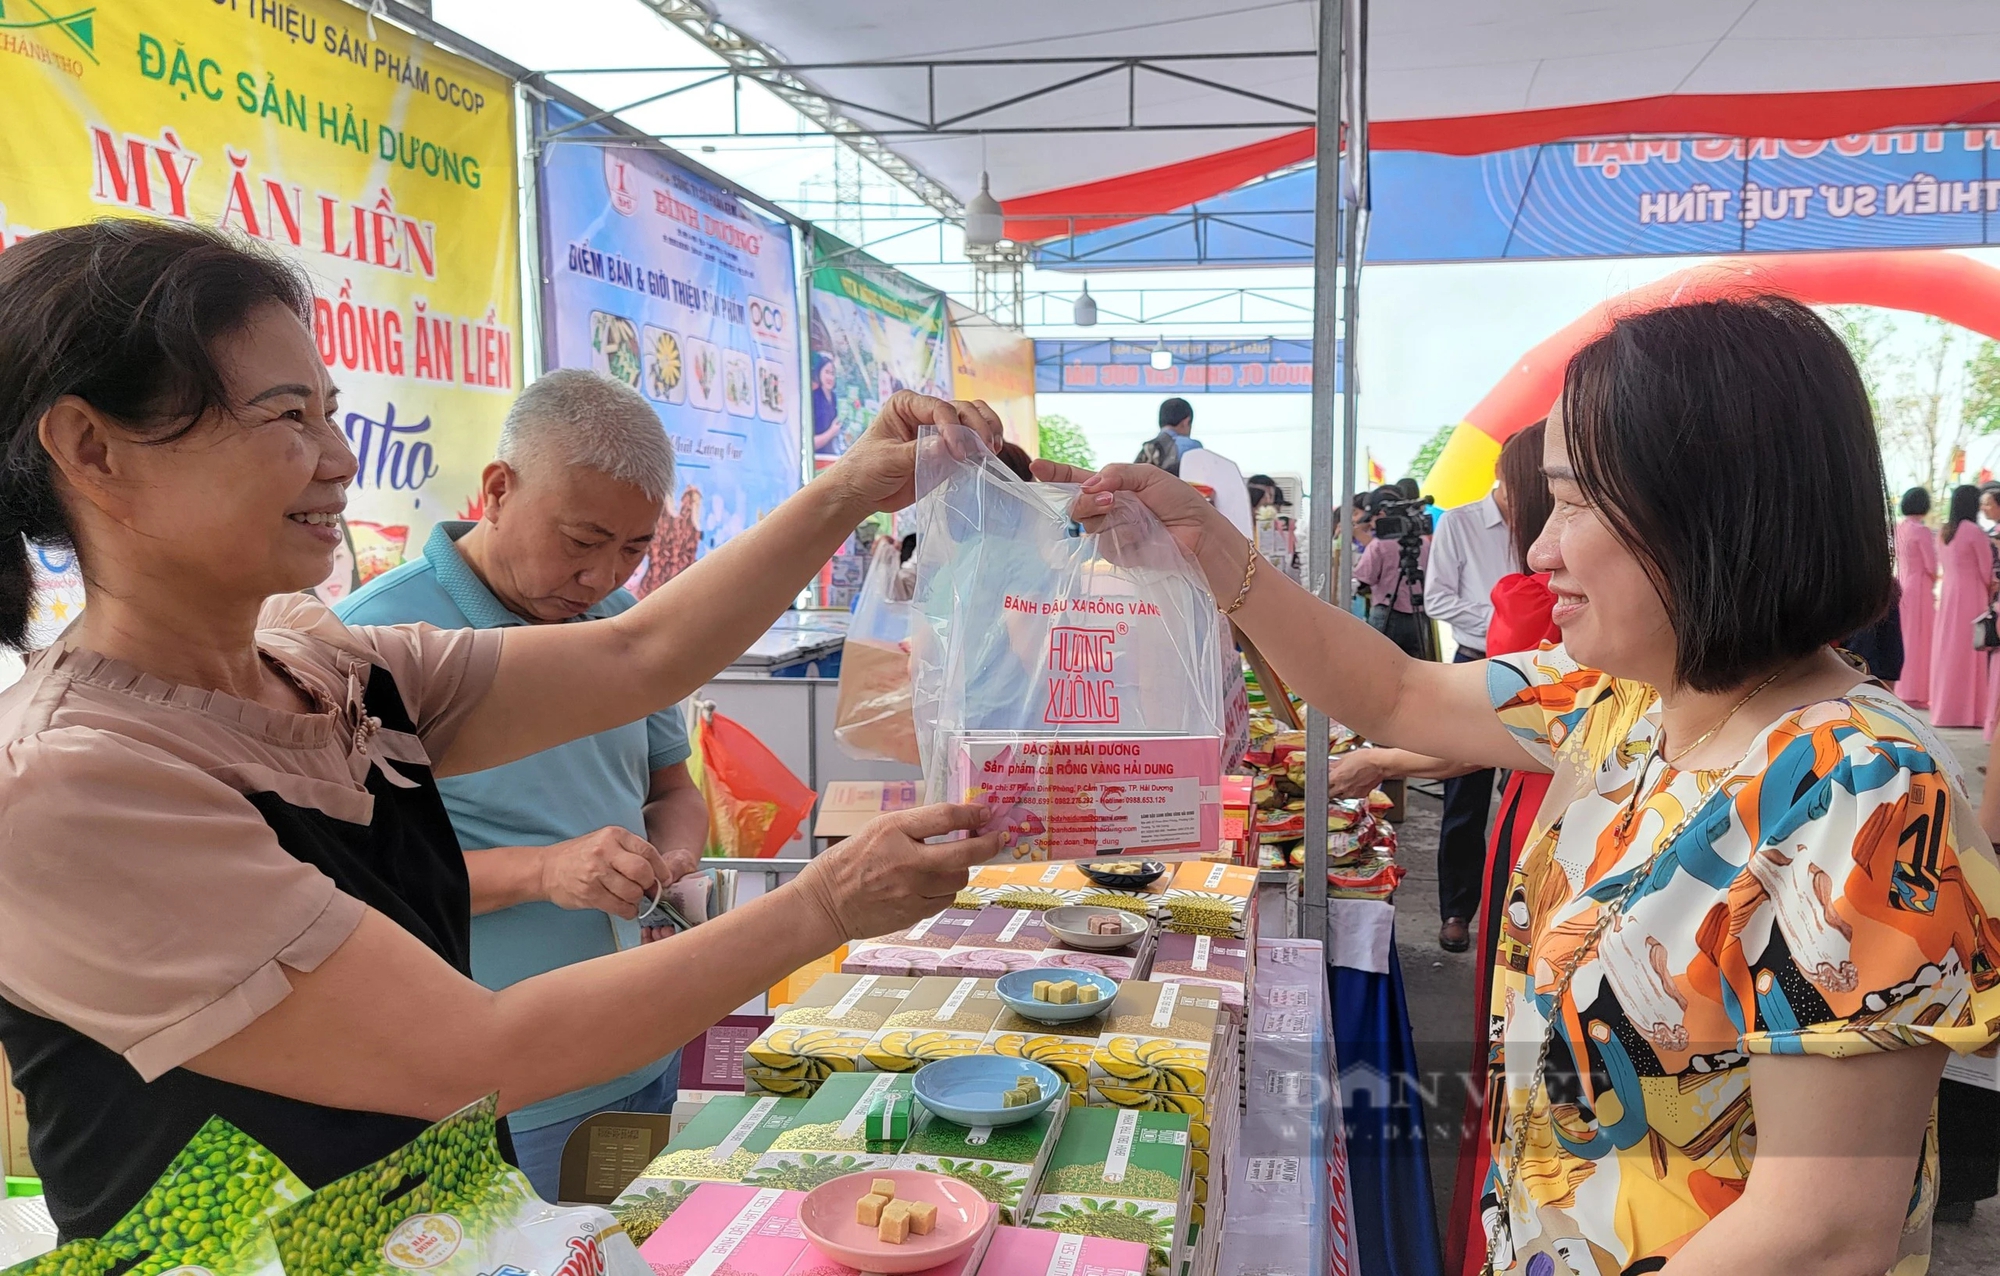 Hải Dương: Nông sản OCOP huyện Cẩm Giàng đang trưng bày giới thiệu tại lễ hội đền Bia- Ảnh 11.